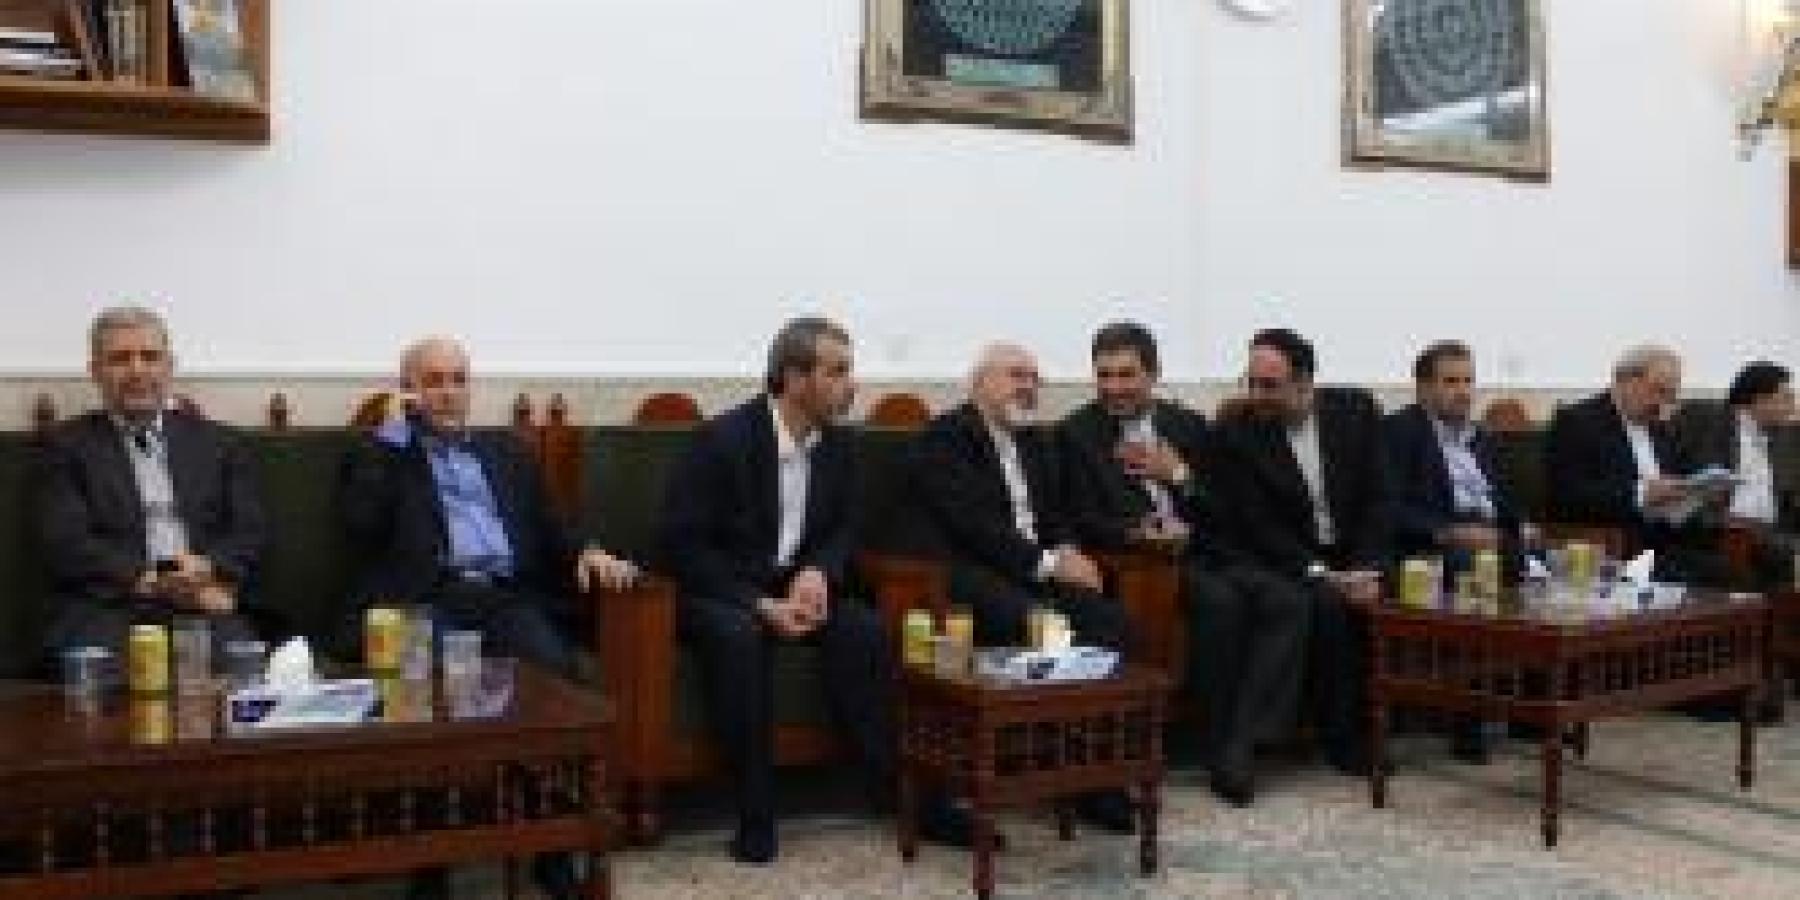 وزير الخارجية الايراني يتشرّف بزيارة مرقد الإمام علي بن أبي طالب (عليه السلام)